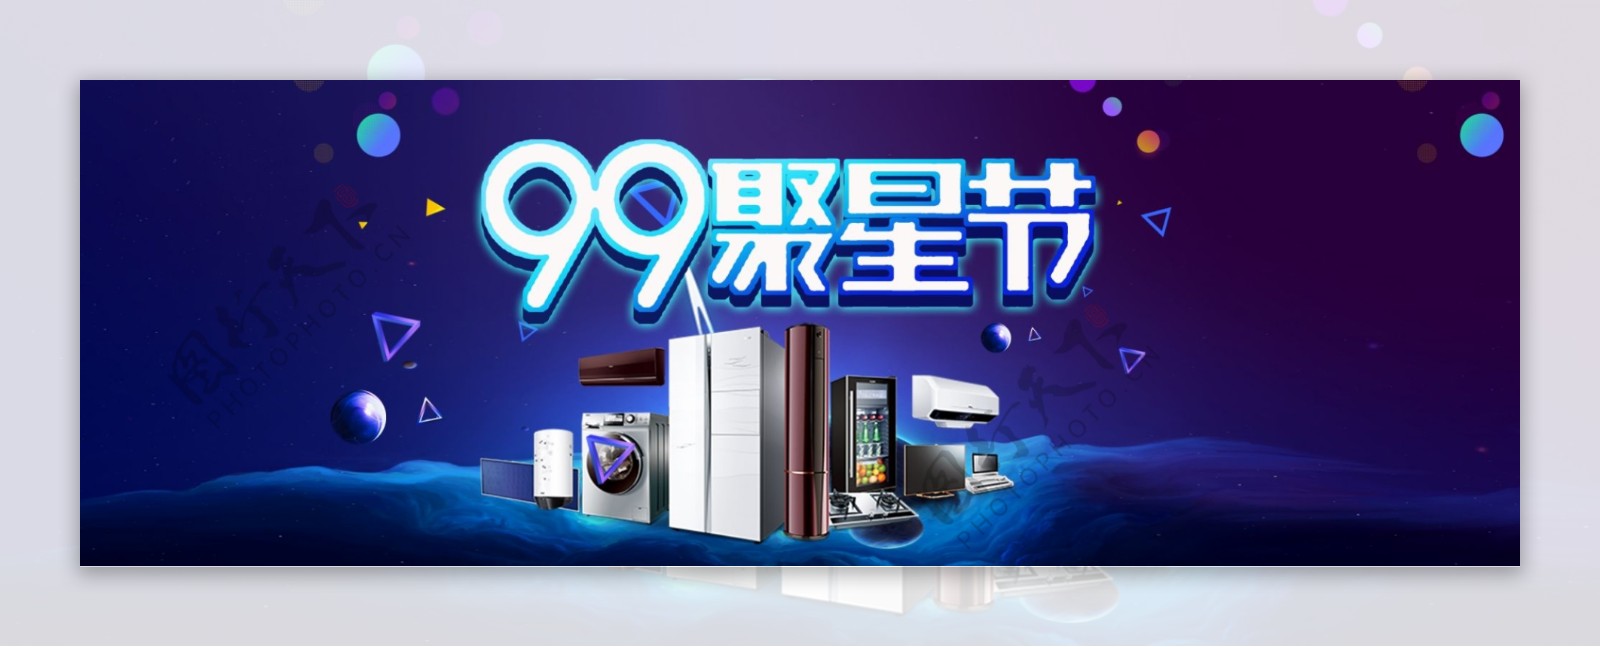 电商淘宝天猫99聚星节炫酷海报banner模板家电海报